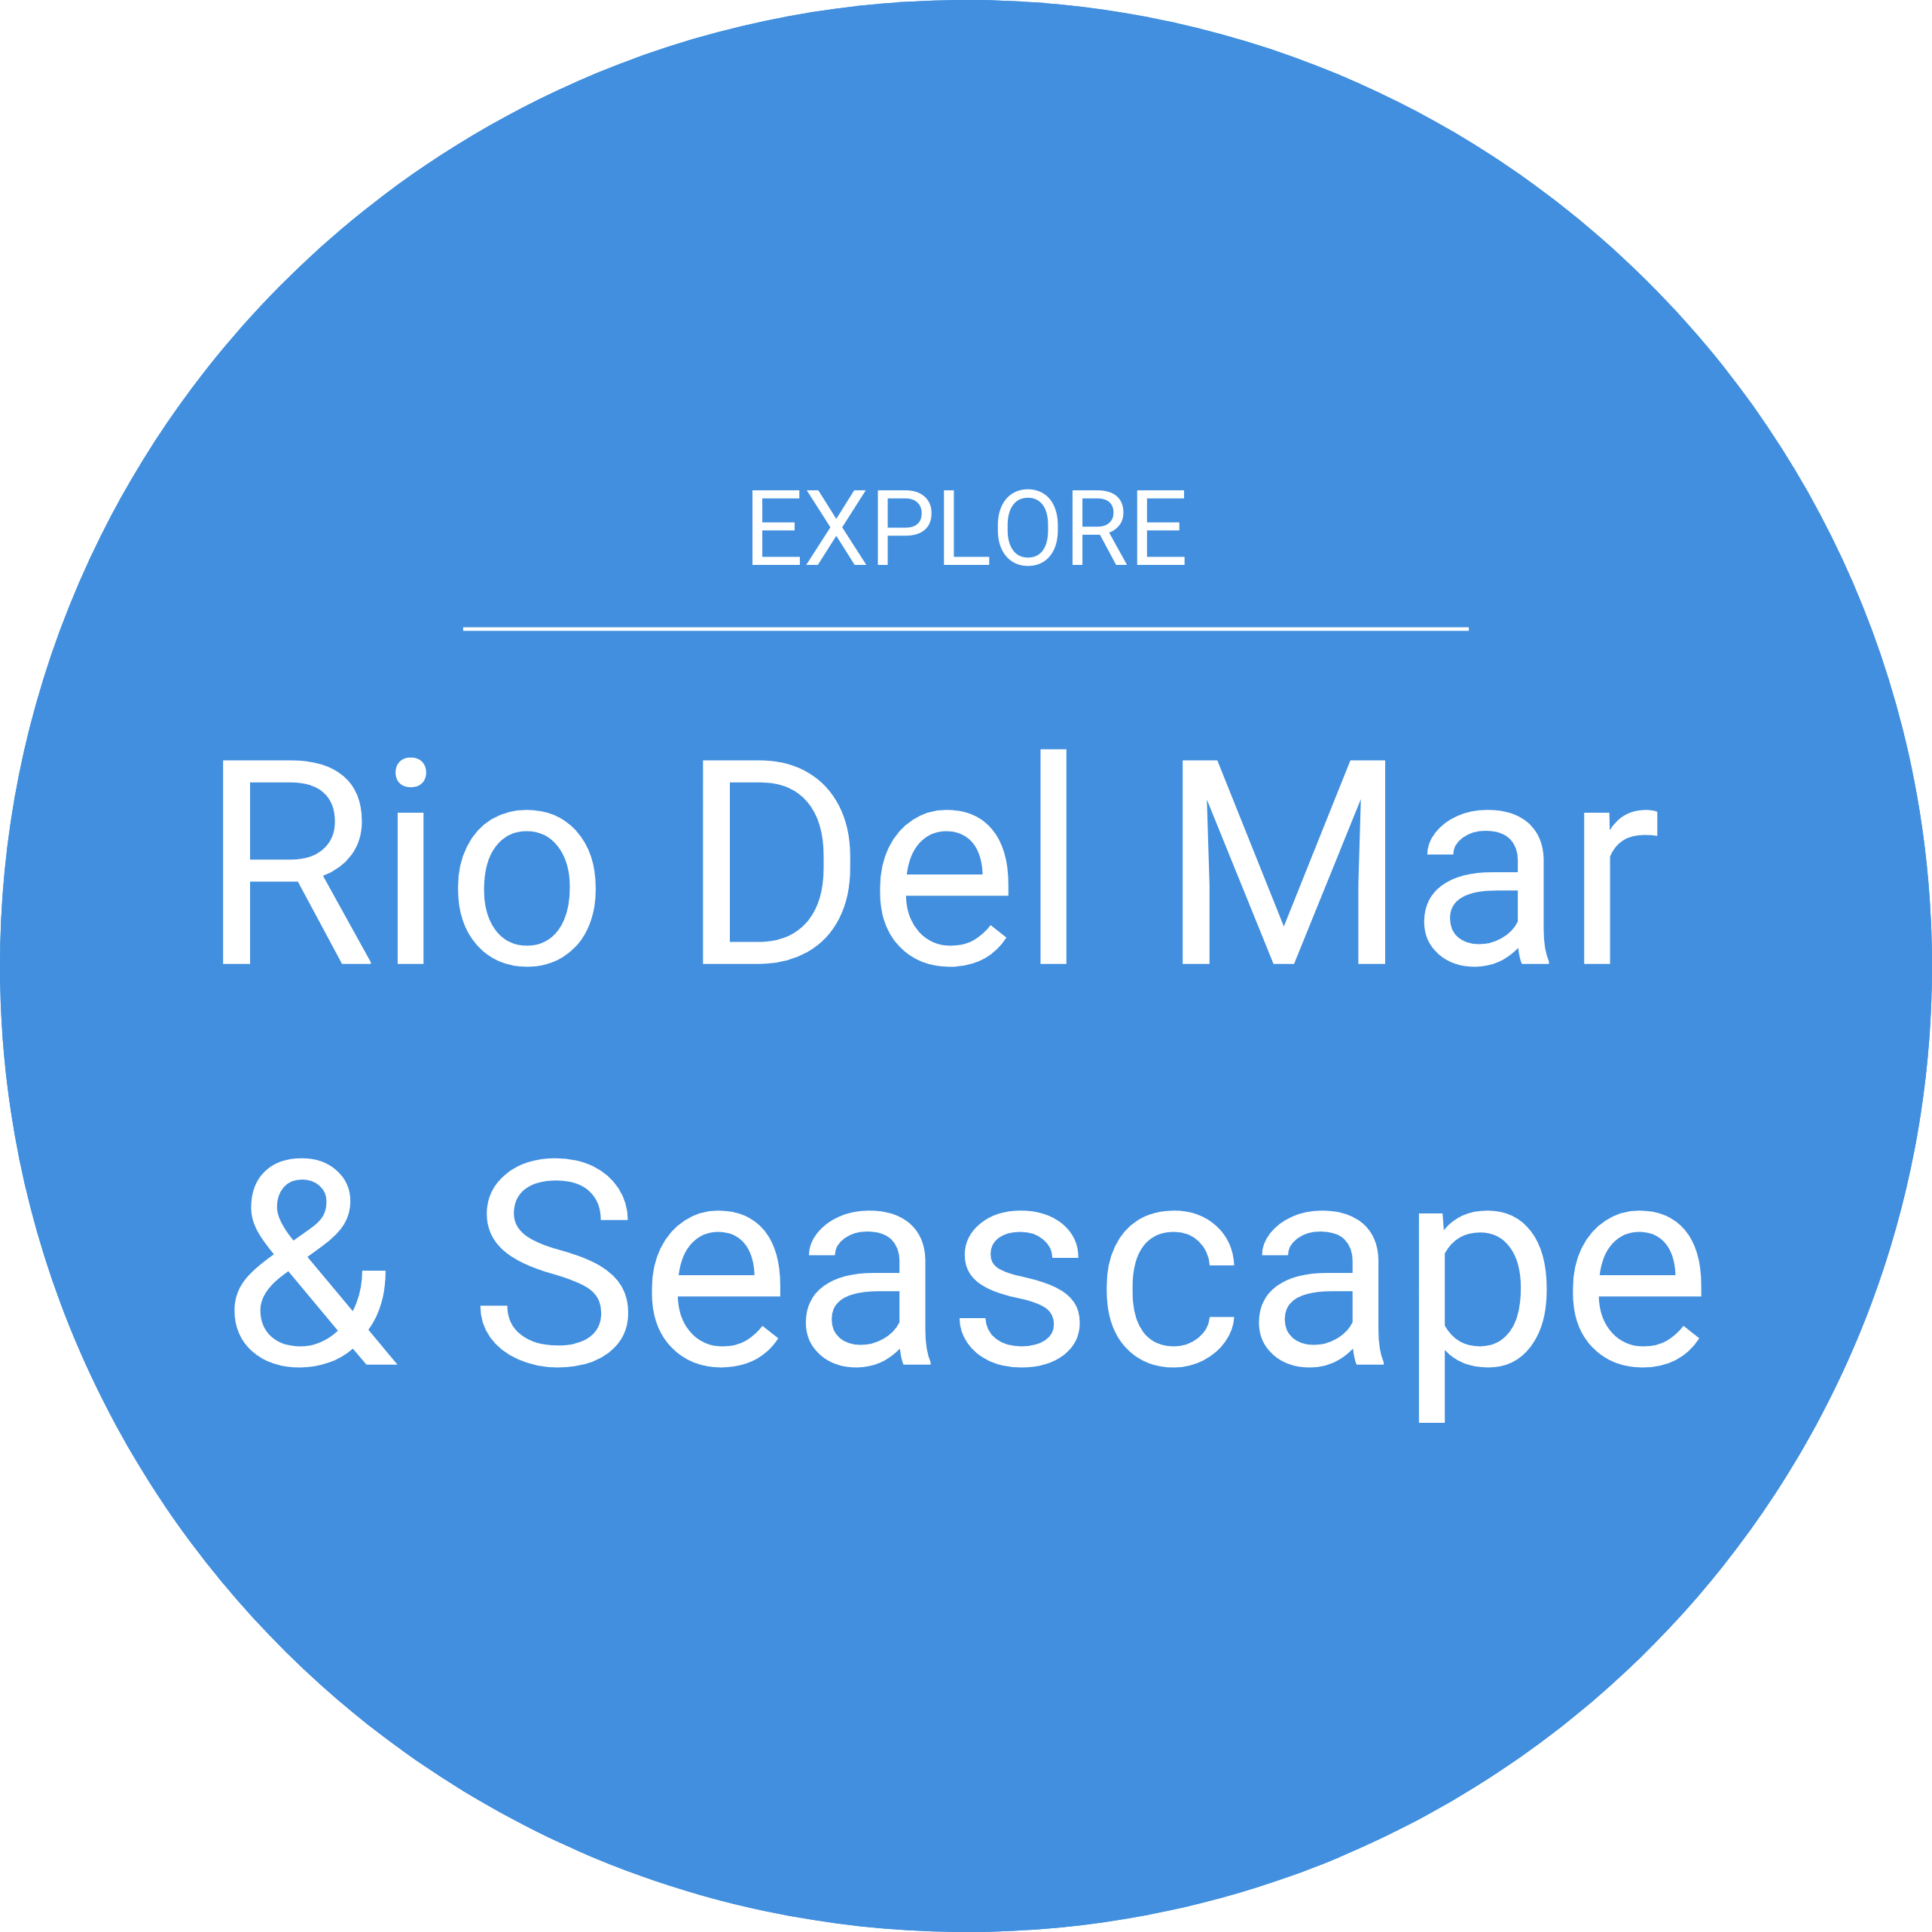 Rio Del Mar and Seascape